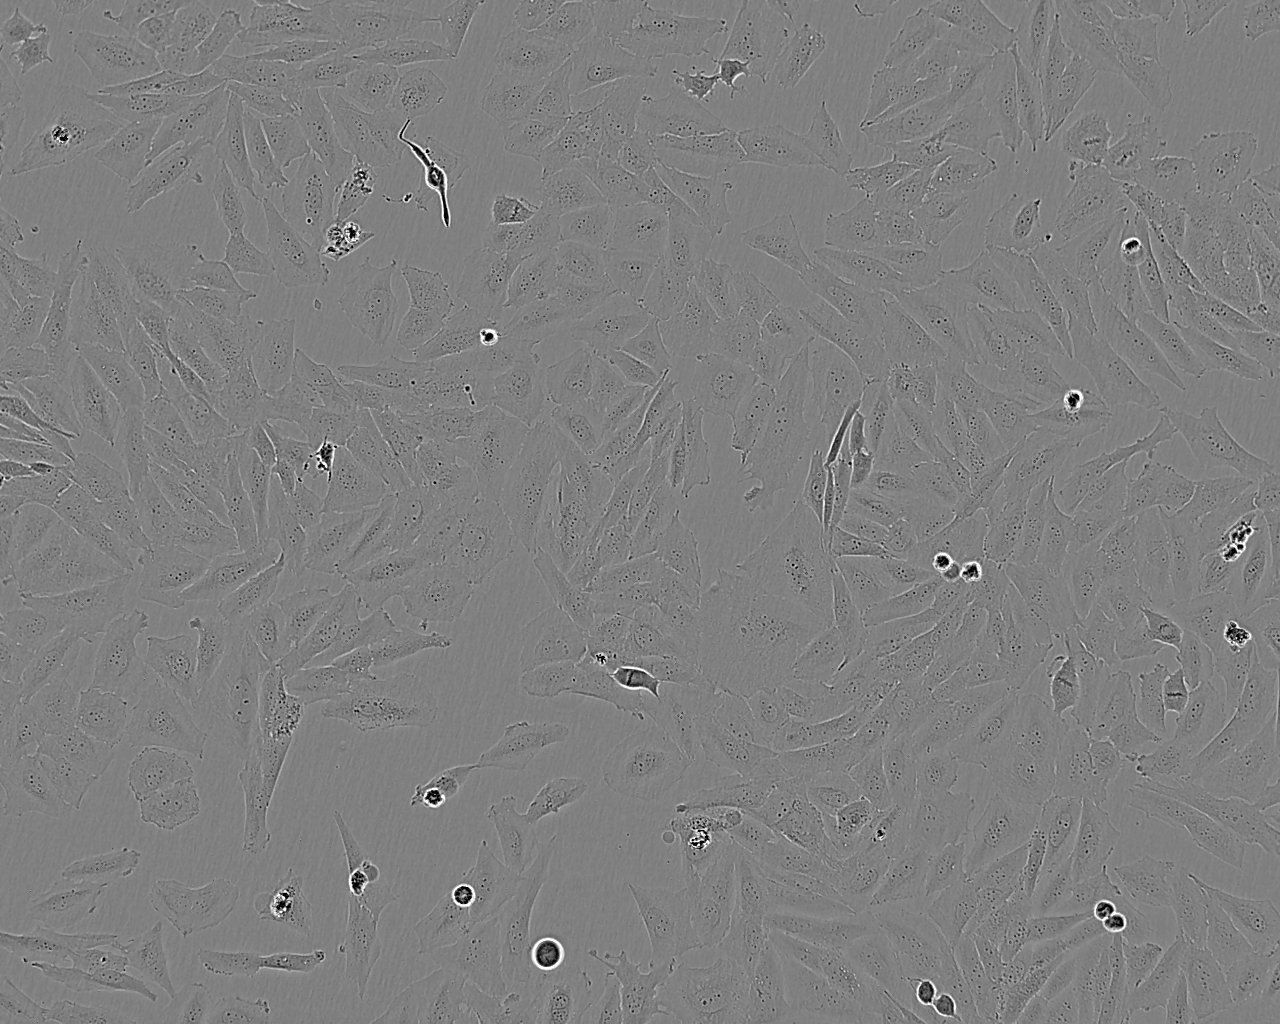 HCC202 epithelioid cells人乳腺原发性导管癌细胞系,HCC202 epithelioid cells